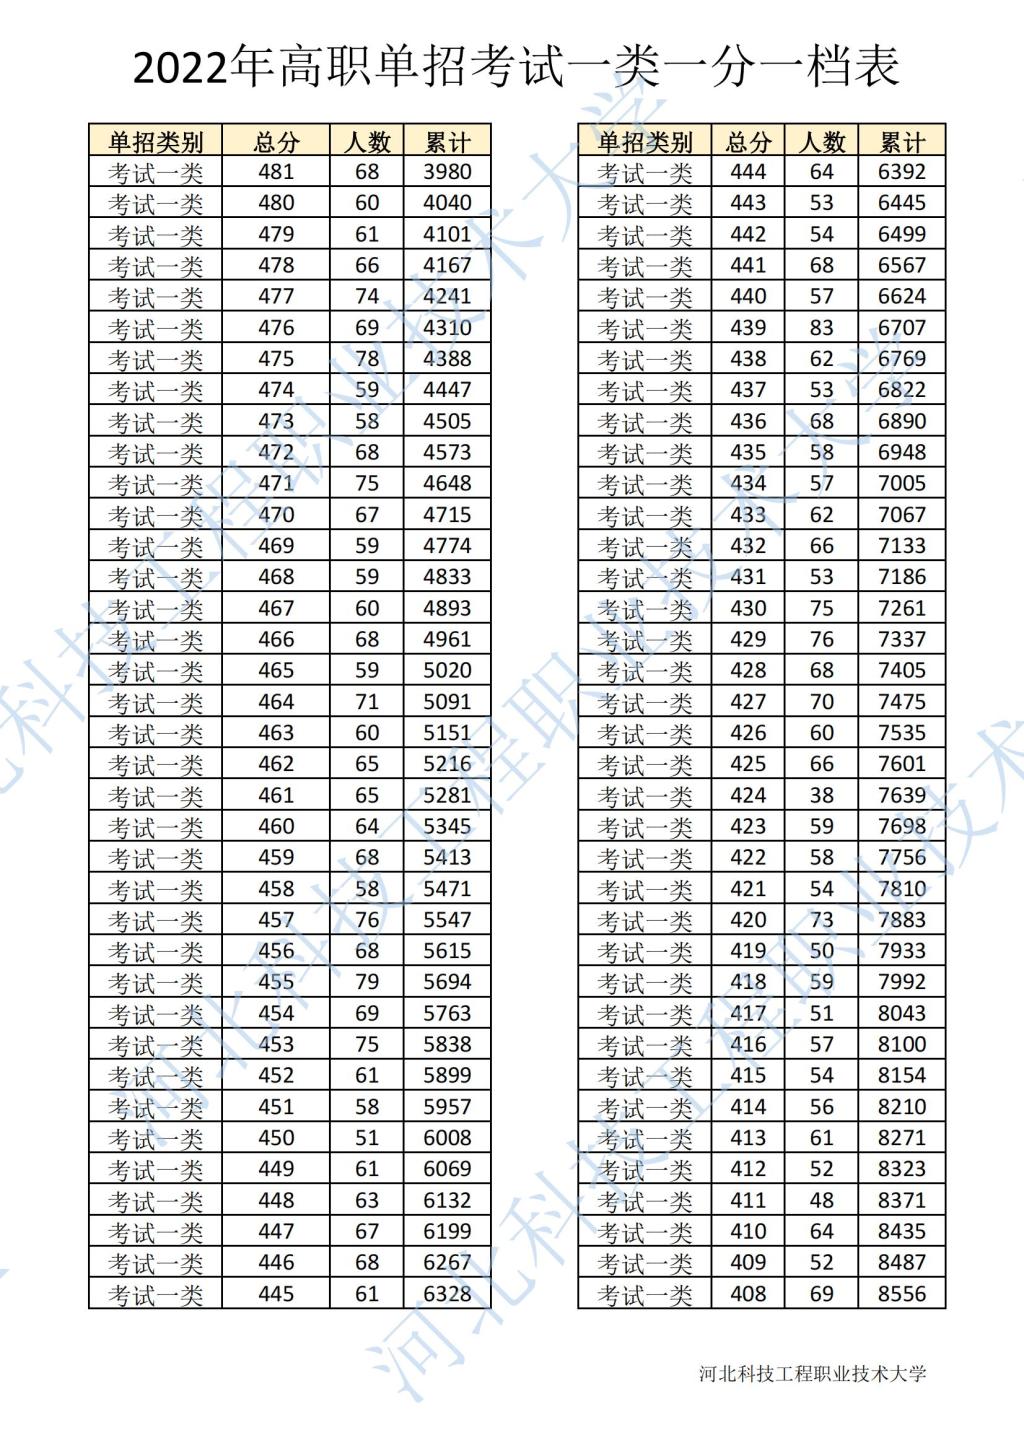 2022年河北省高职单招考试一类一分一档表 图1